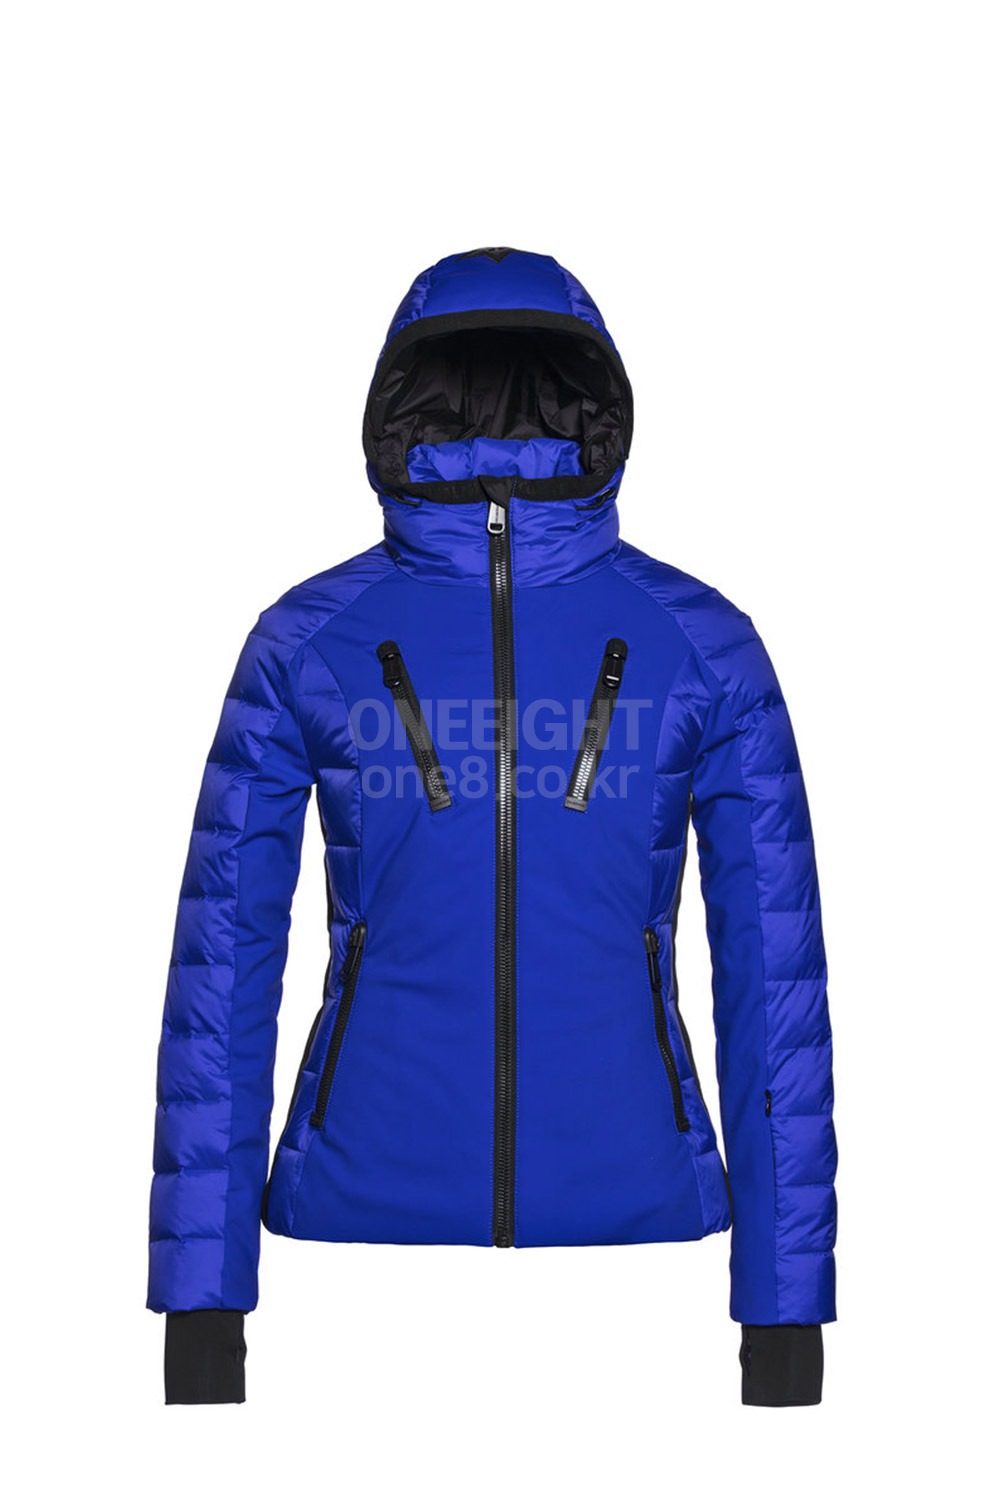 2021 골드버그 여성 스키복 포스포 자켓 2021 GOLDBERGH WMS FOSFOR JACKET_501(ELECTRIC BLUE)_B80G004BU